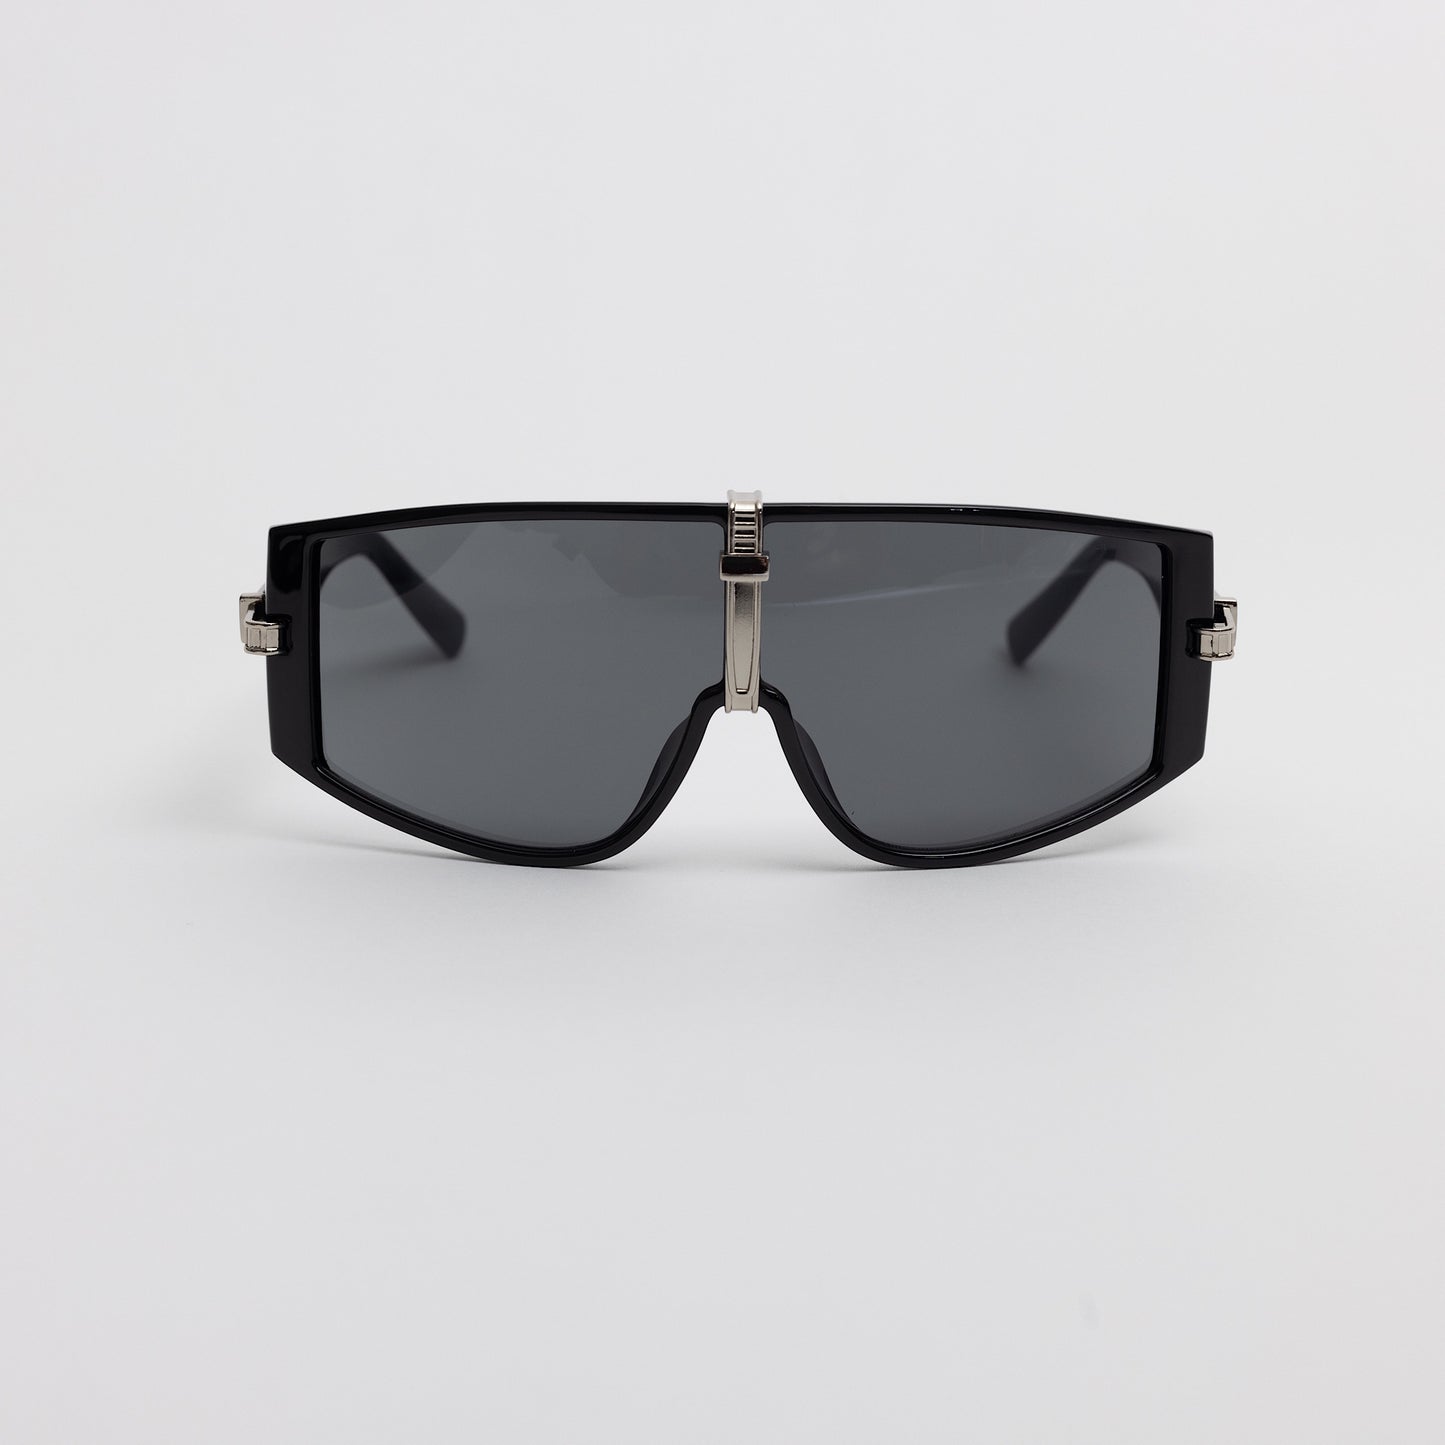 Silver Center Black Sunglasses